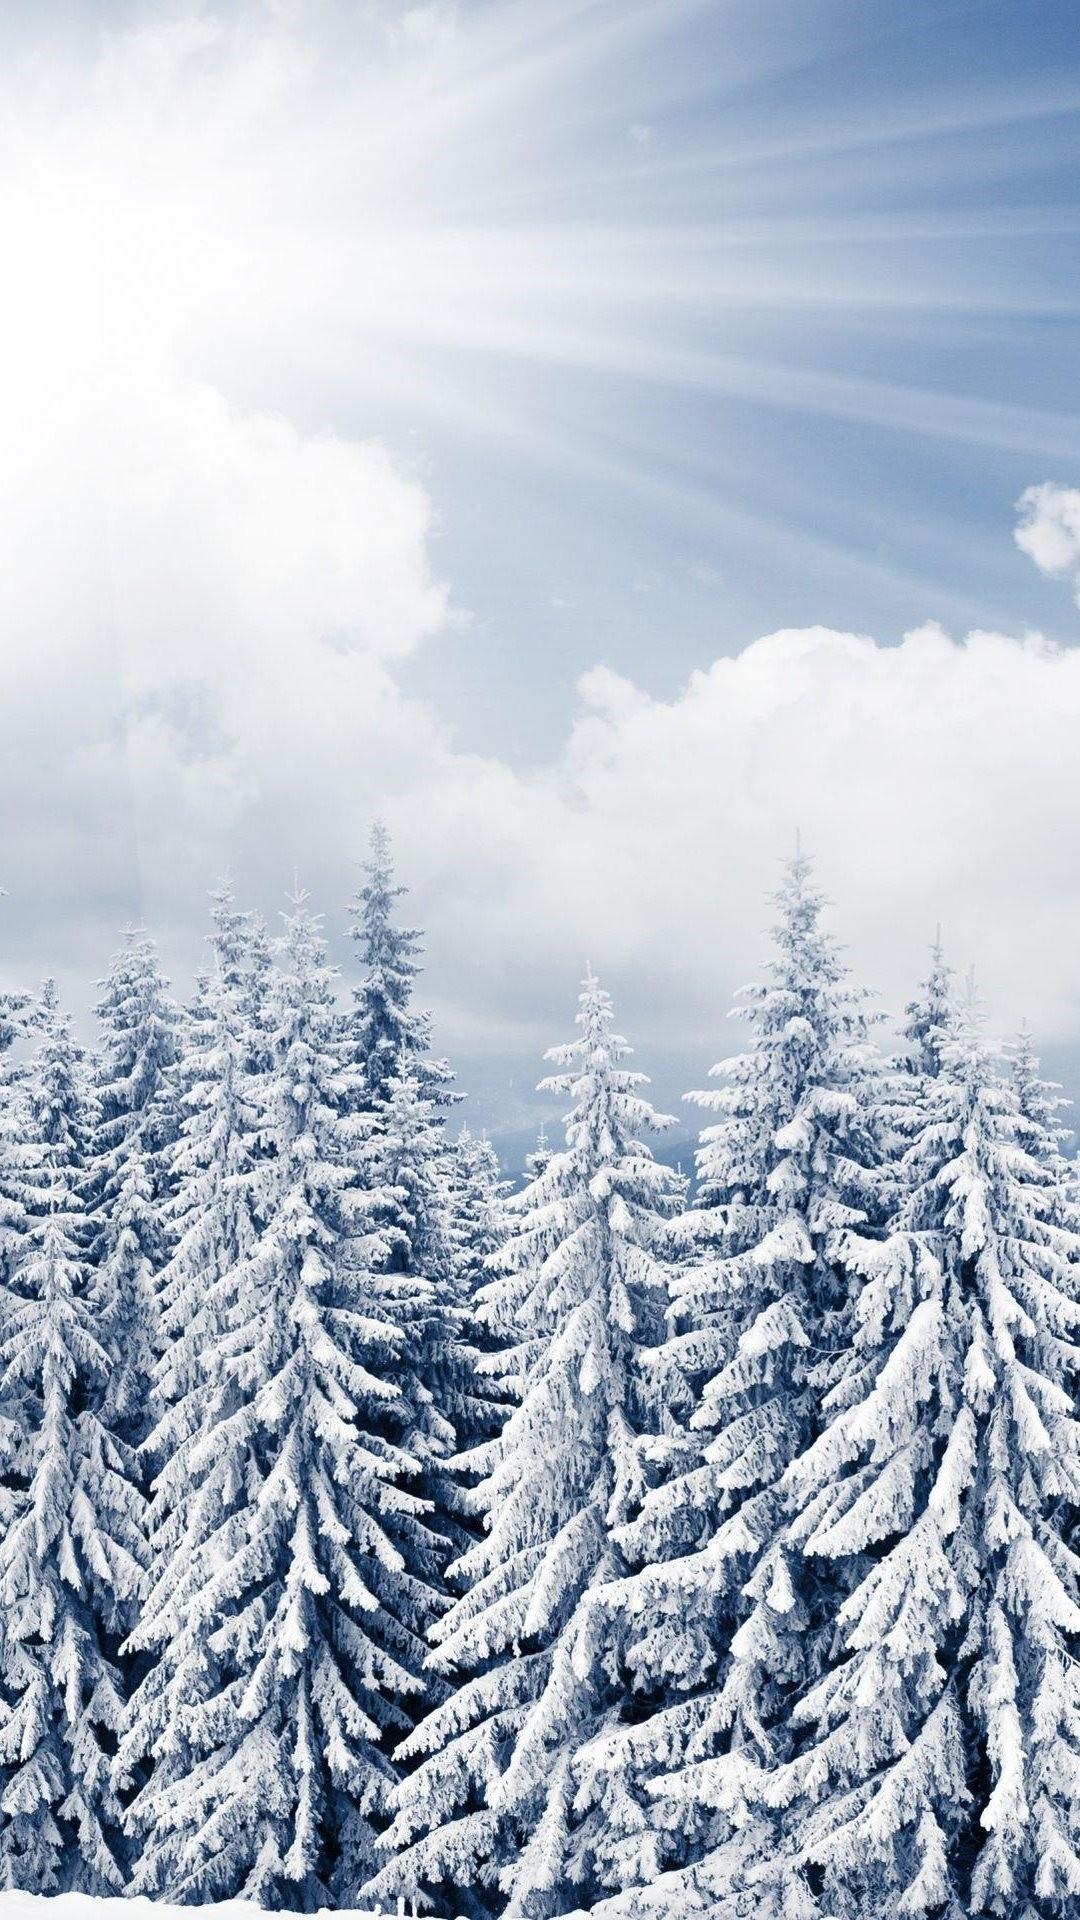 Cảm nhận không khí mùa đông tràn ngập trên màn hình iPhone 8 Plus với những hình nền đẹp và tuyệt vời. Chúng tôi đã sàng lọc ra những hình ảnh tuyệt đẹp về những cánh rừng phủ tuyết, những con sư tử chứng minh sức mạnh của mình, hay cả những đám mây đầy mơ mộng.